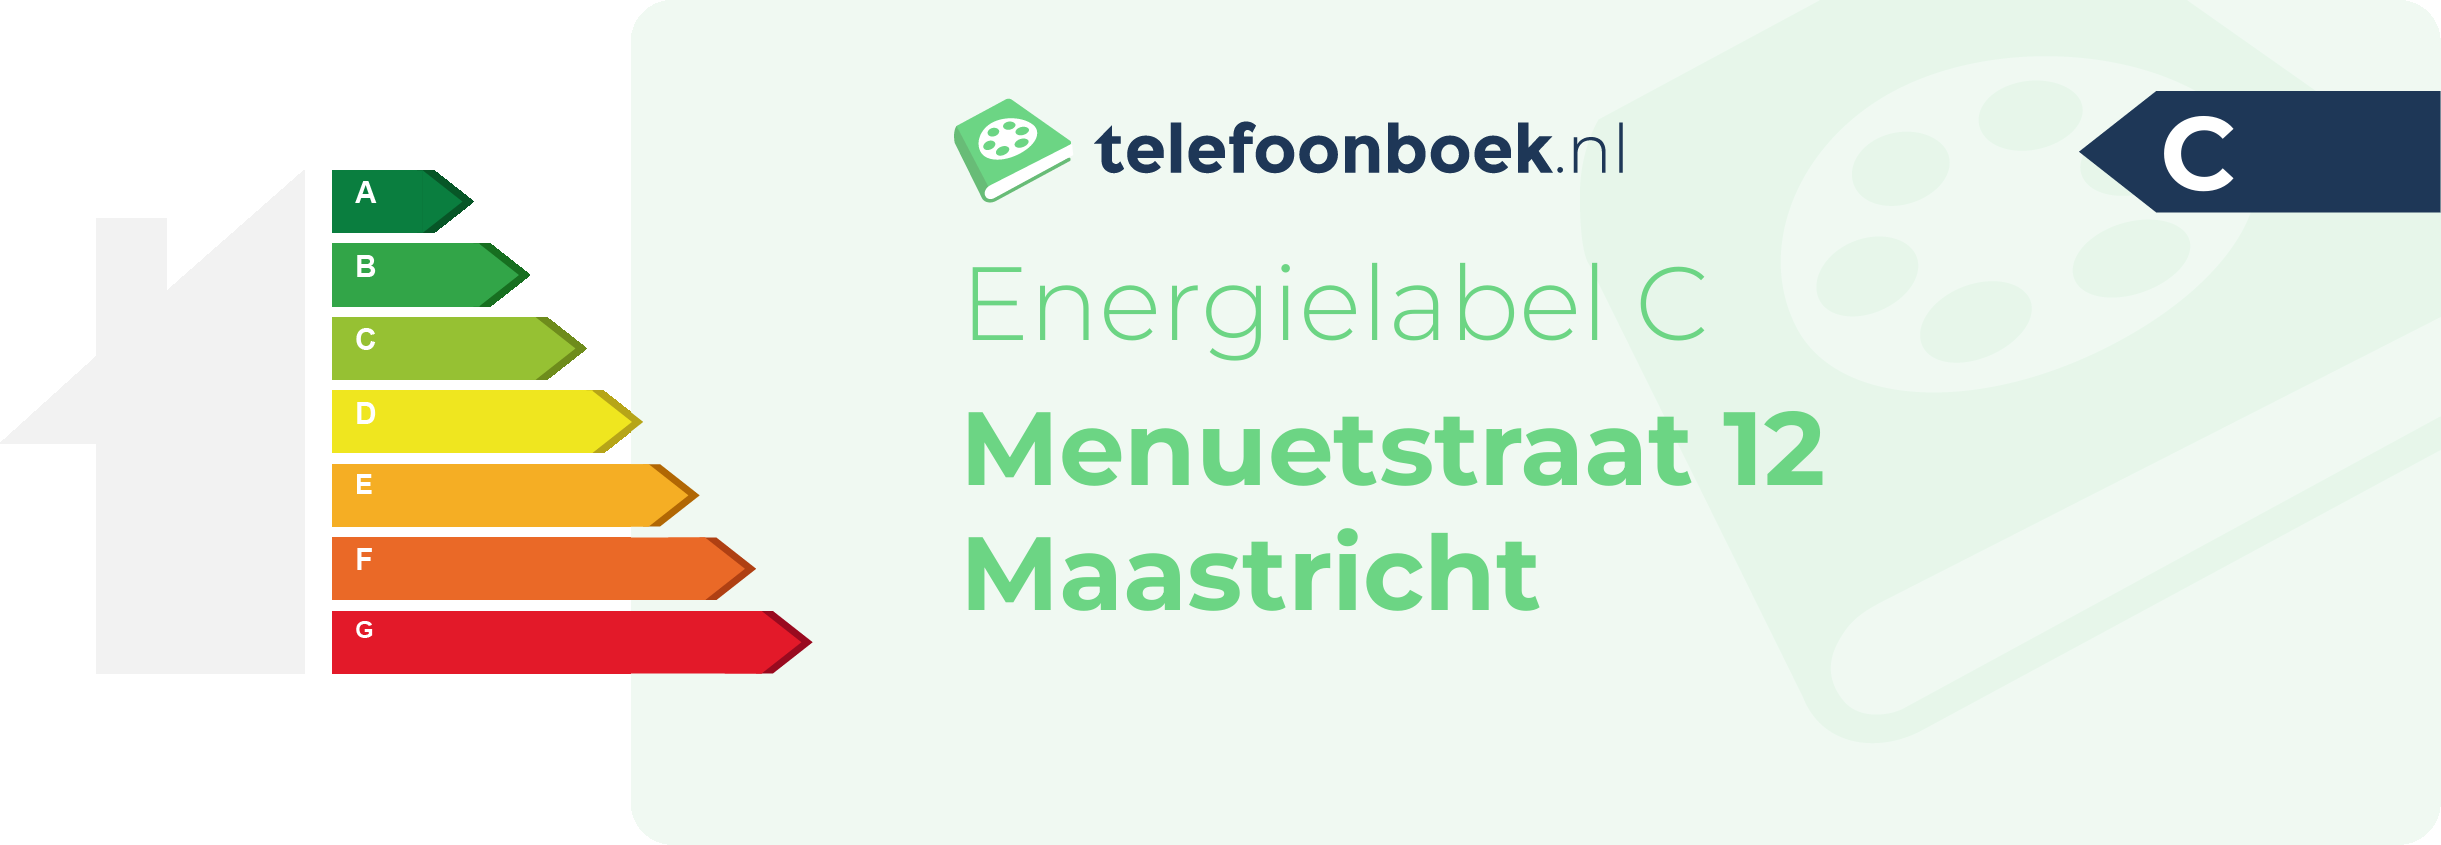 Energielabel Menuetstraat 12 Maastricht